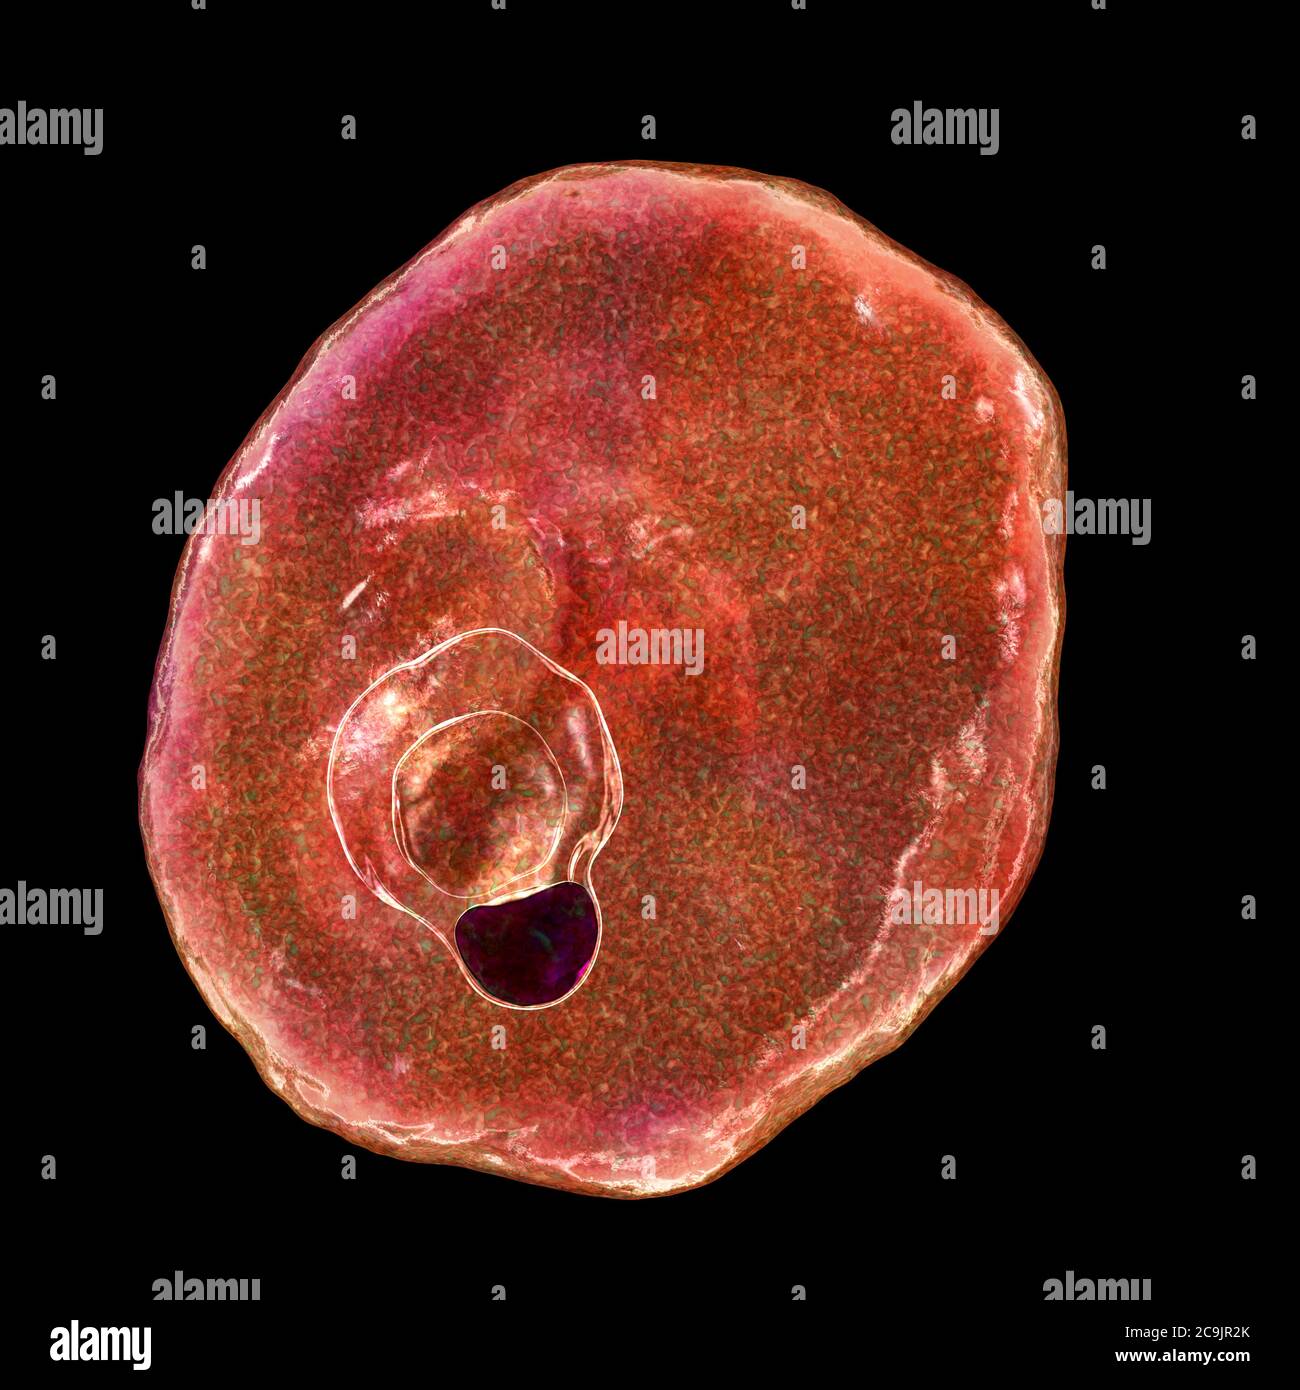 Plasmodium ovale protozoan innerhalb der roten Blutkörperchen, Computer-Illustration. P. ovale ist der Erreger der gutartigen tertianischen Malaria, auch oval genannt Stockfoto